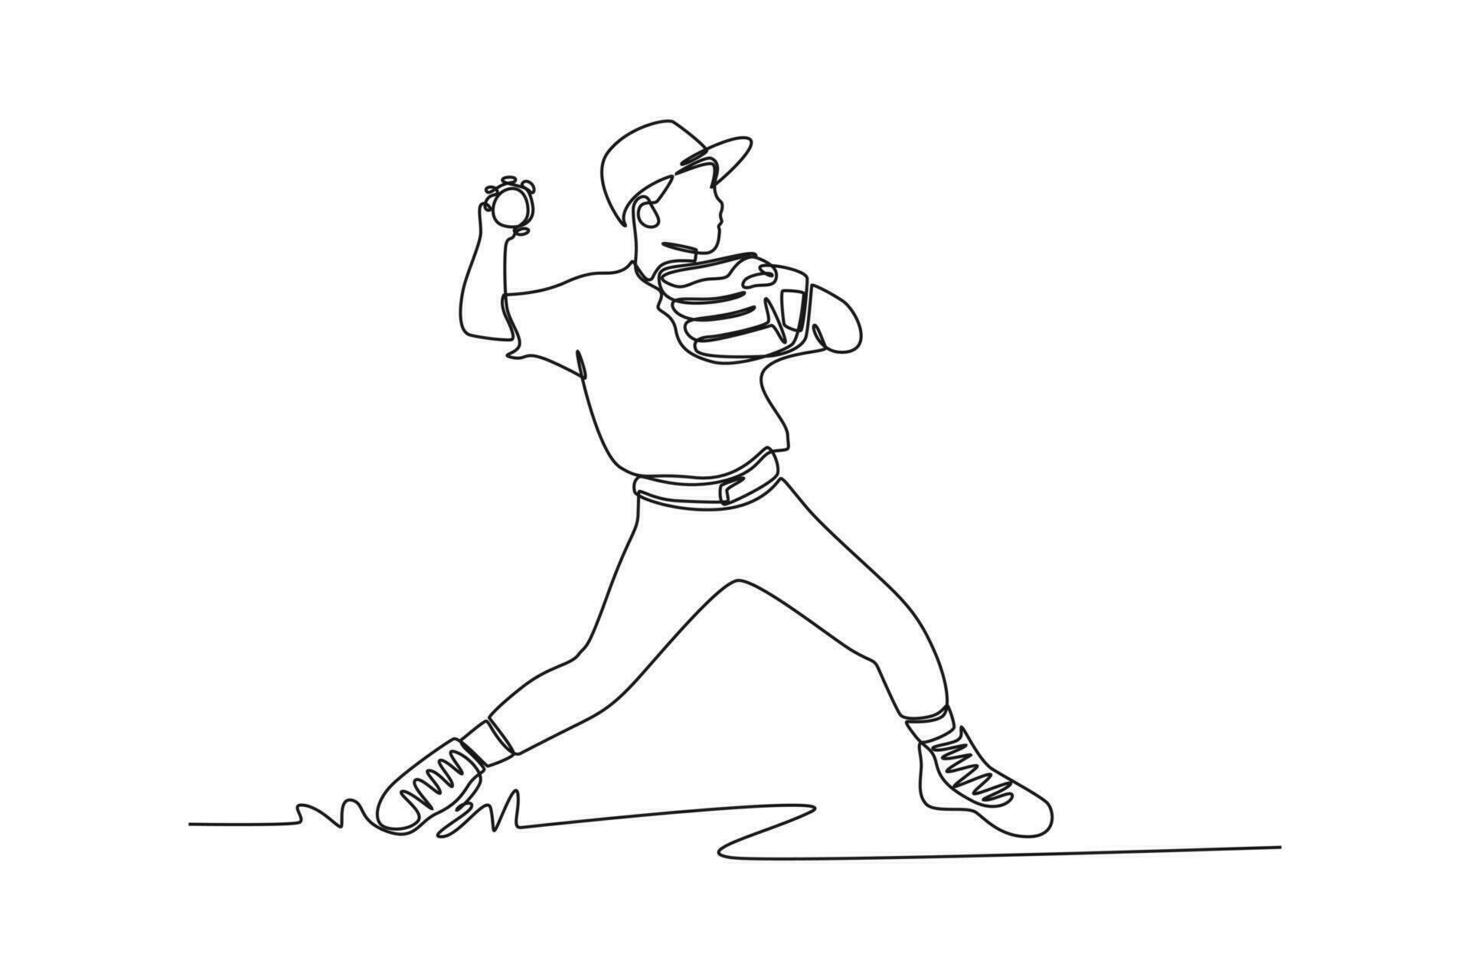 kontinuierlich einer Linie Zeichnung Jugend Sport Konzept. Single Linie zeichnen Design Vektor Grafik Illustration.